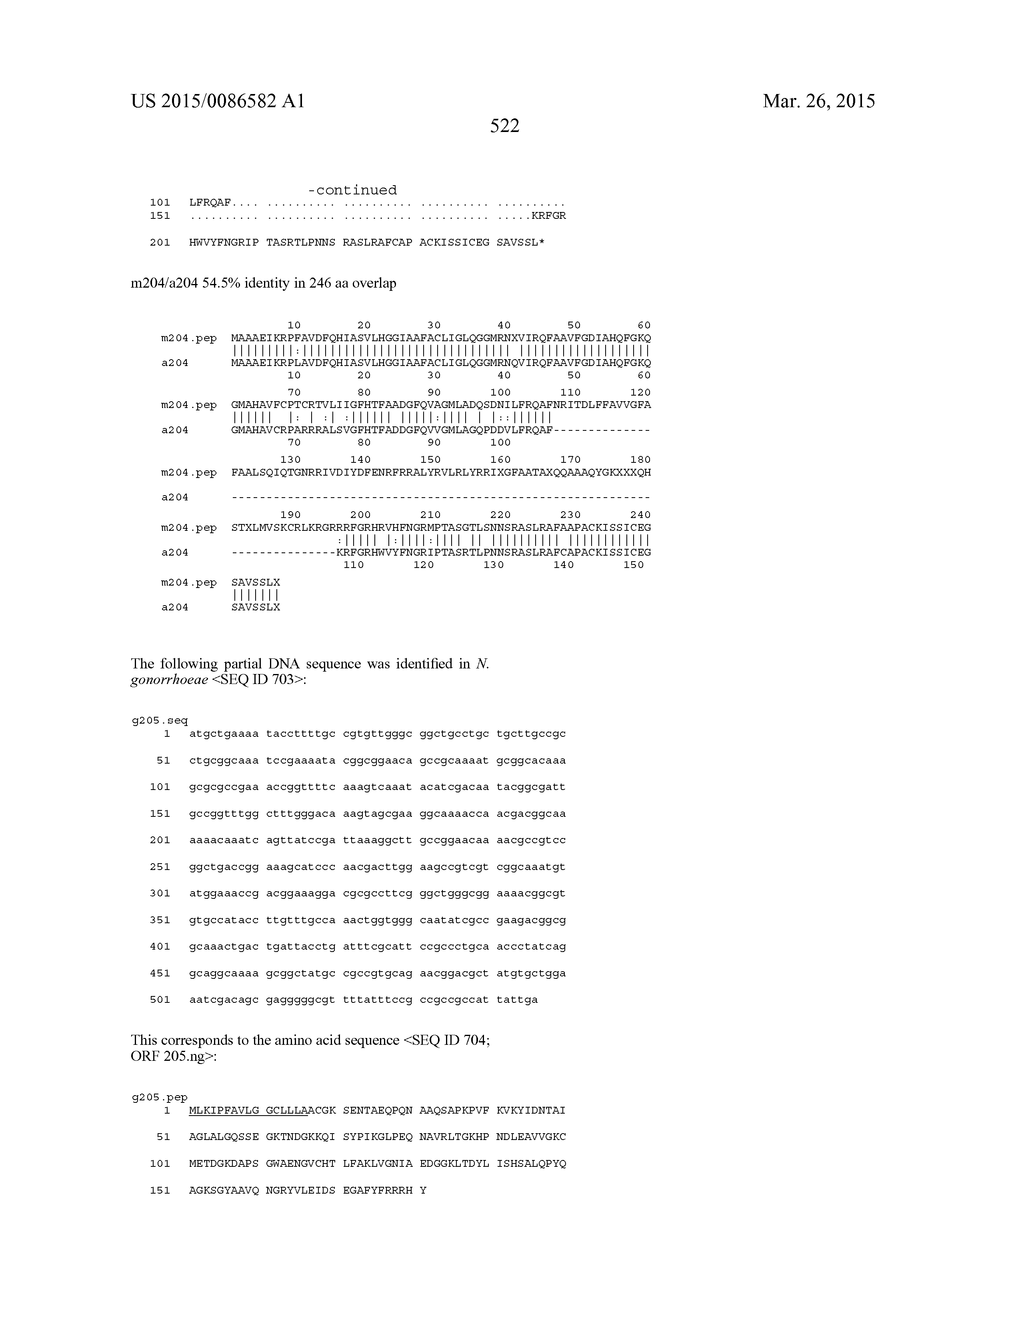 NEISSERIA MENINGITIDIS ANTIGENS AND COMPOSITIONS - diagram, schematic, and image 554